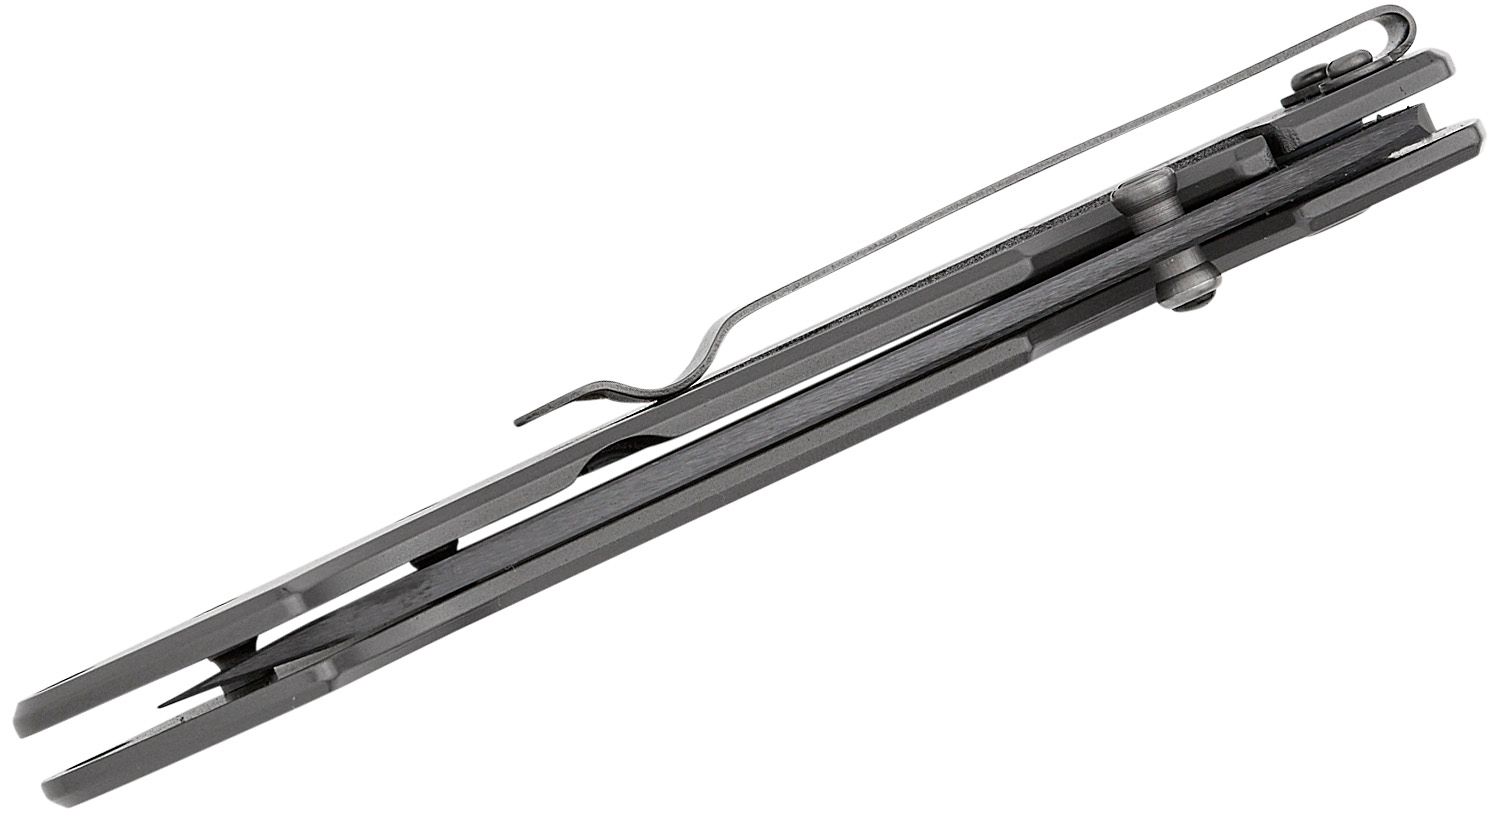 Böker Plus Anti-MC. Ceramic blade (zirconium oxide), titanium handle, CR  frame lock. 7.75 inches overall, 3.25 inch blade. Wei…